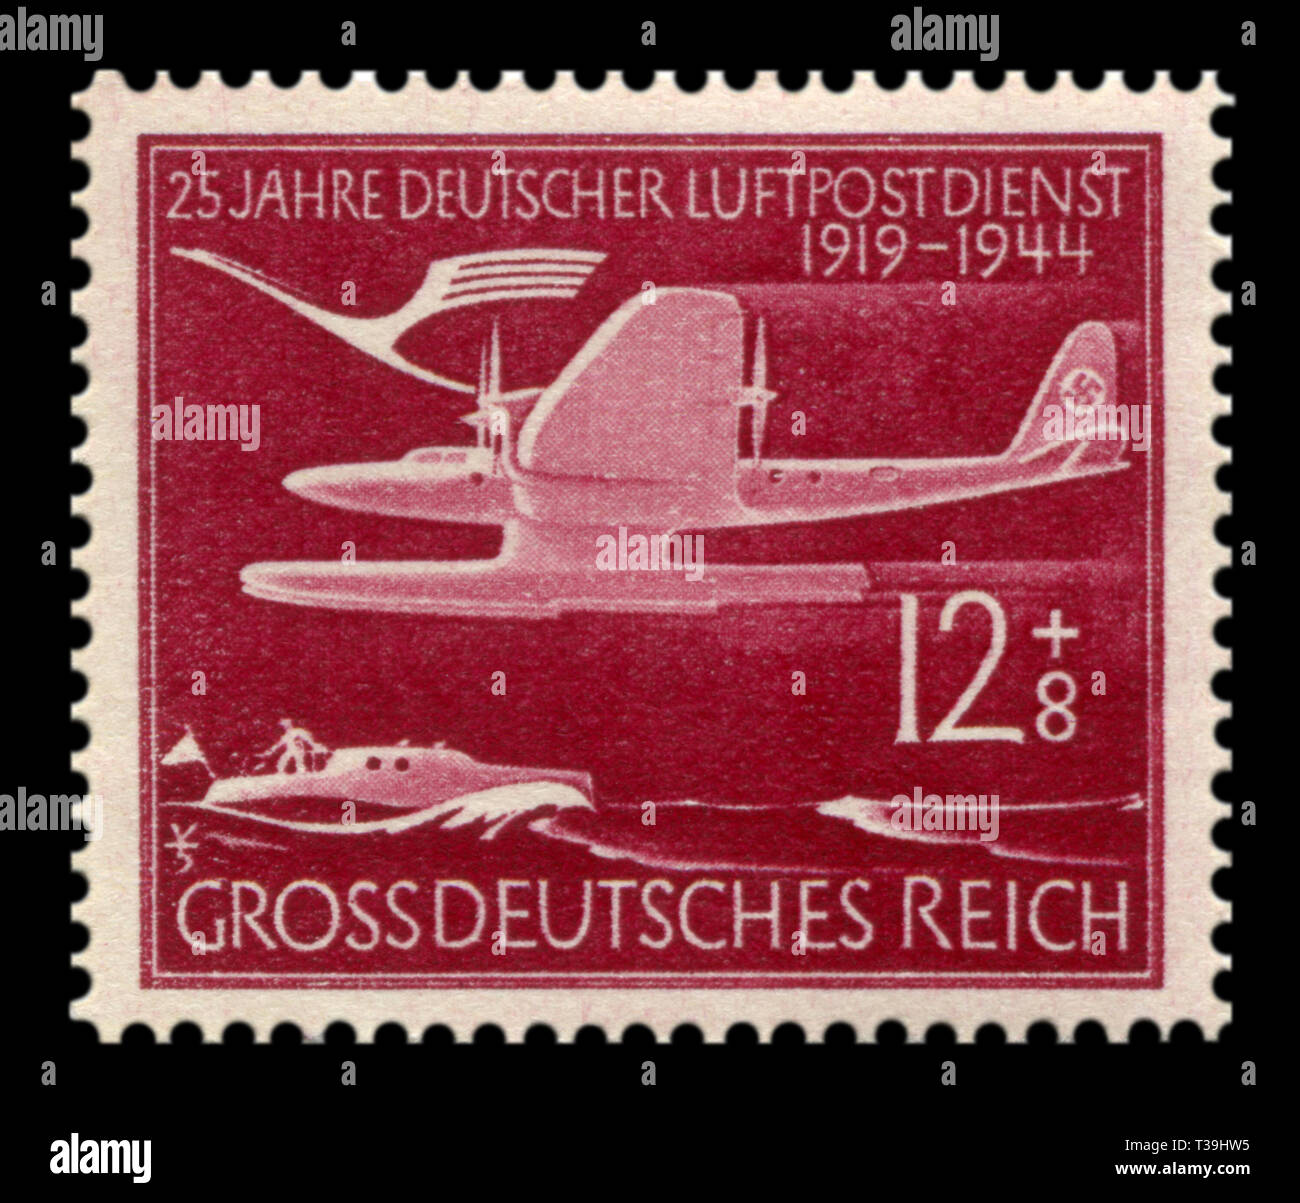 Sello histórico alemán: 25º aniversario del servicio aéreo postal alemán. Hidroavión Blohm & Voss HA 139a volar sobre el agua, el correo aéreo, de 1944, la Dra. Foto de stock